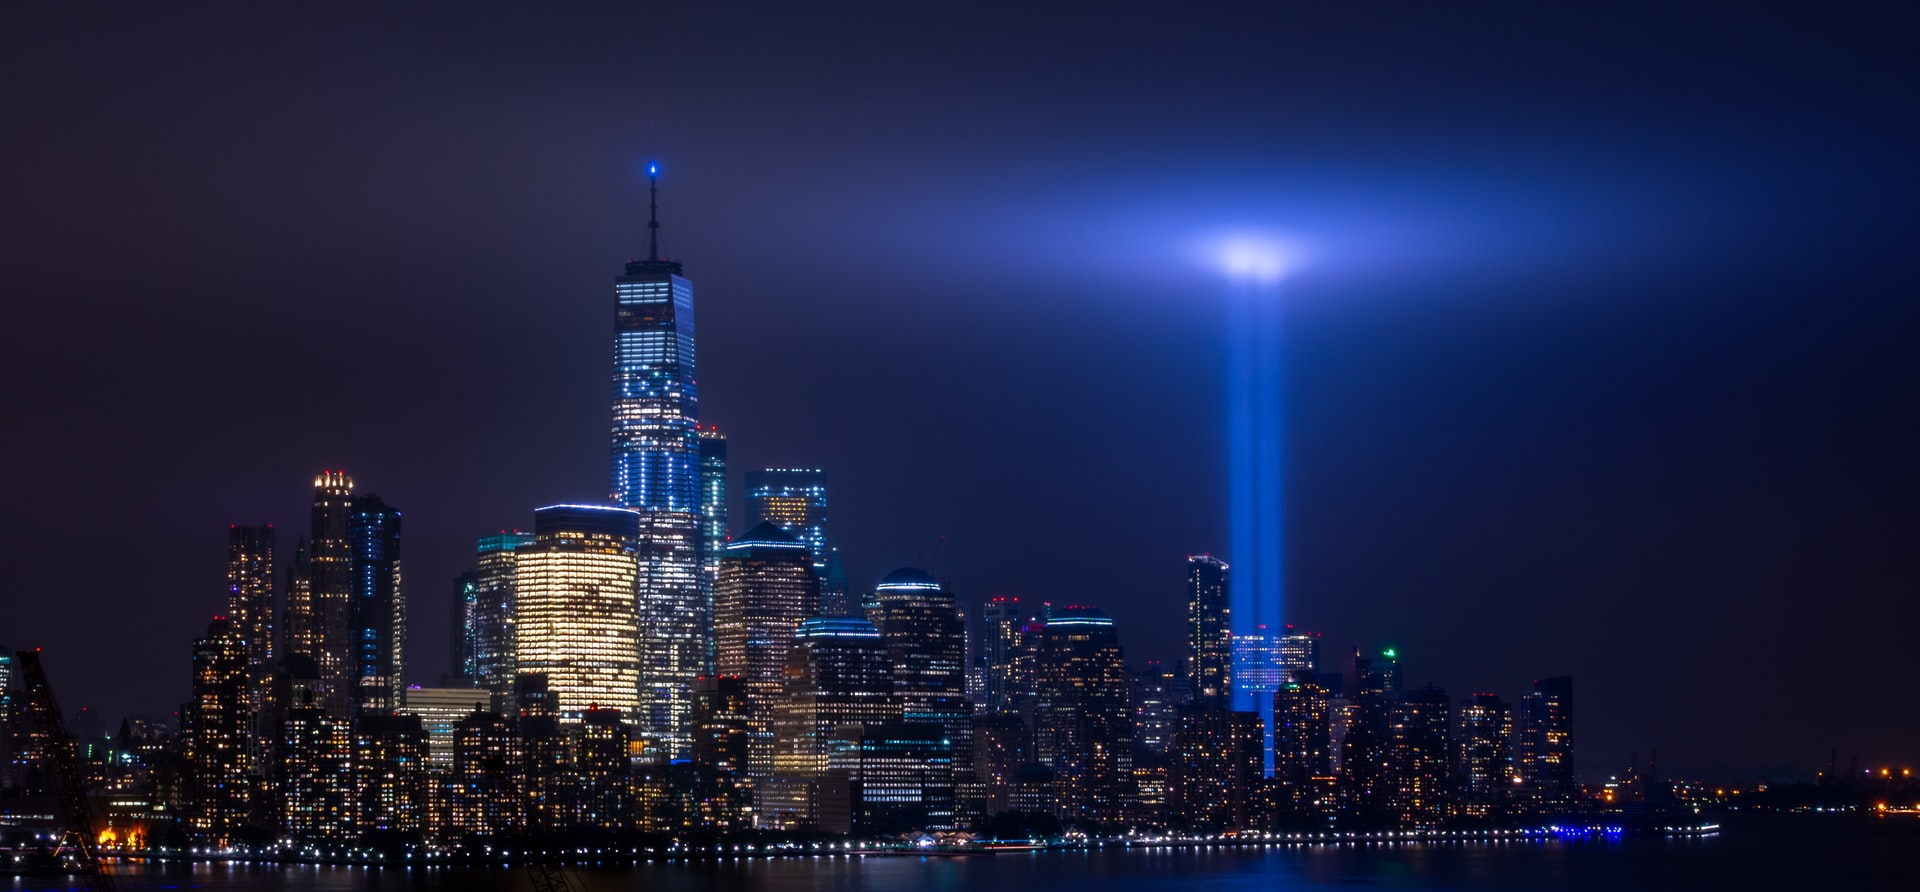 9-11 anniversary